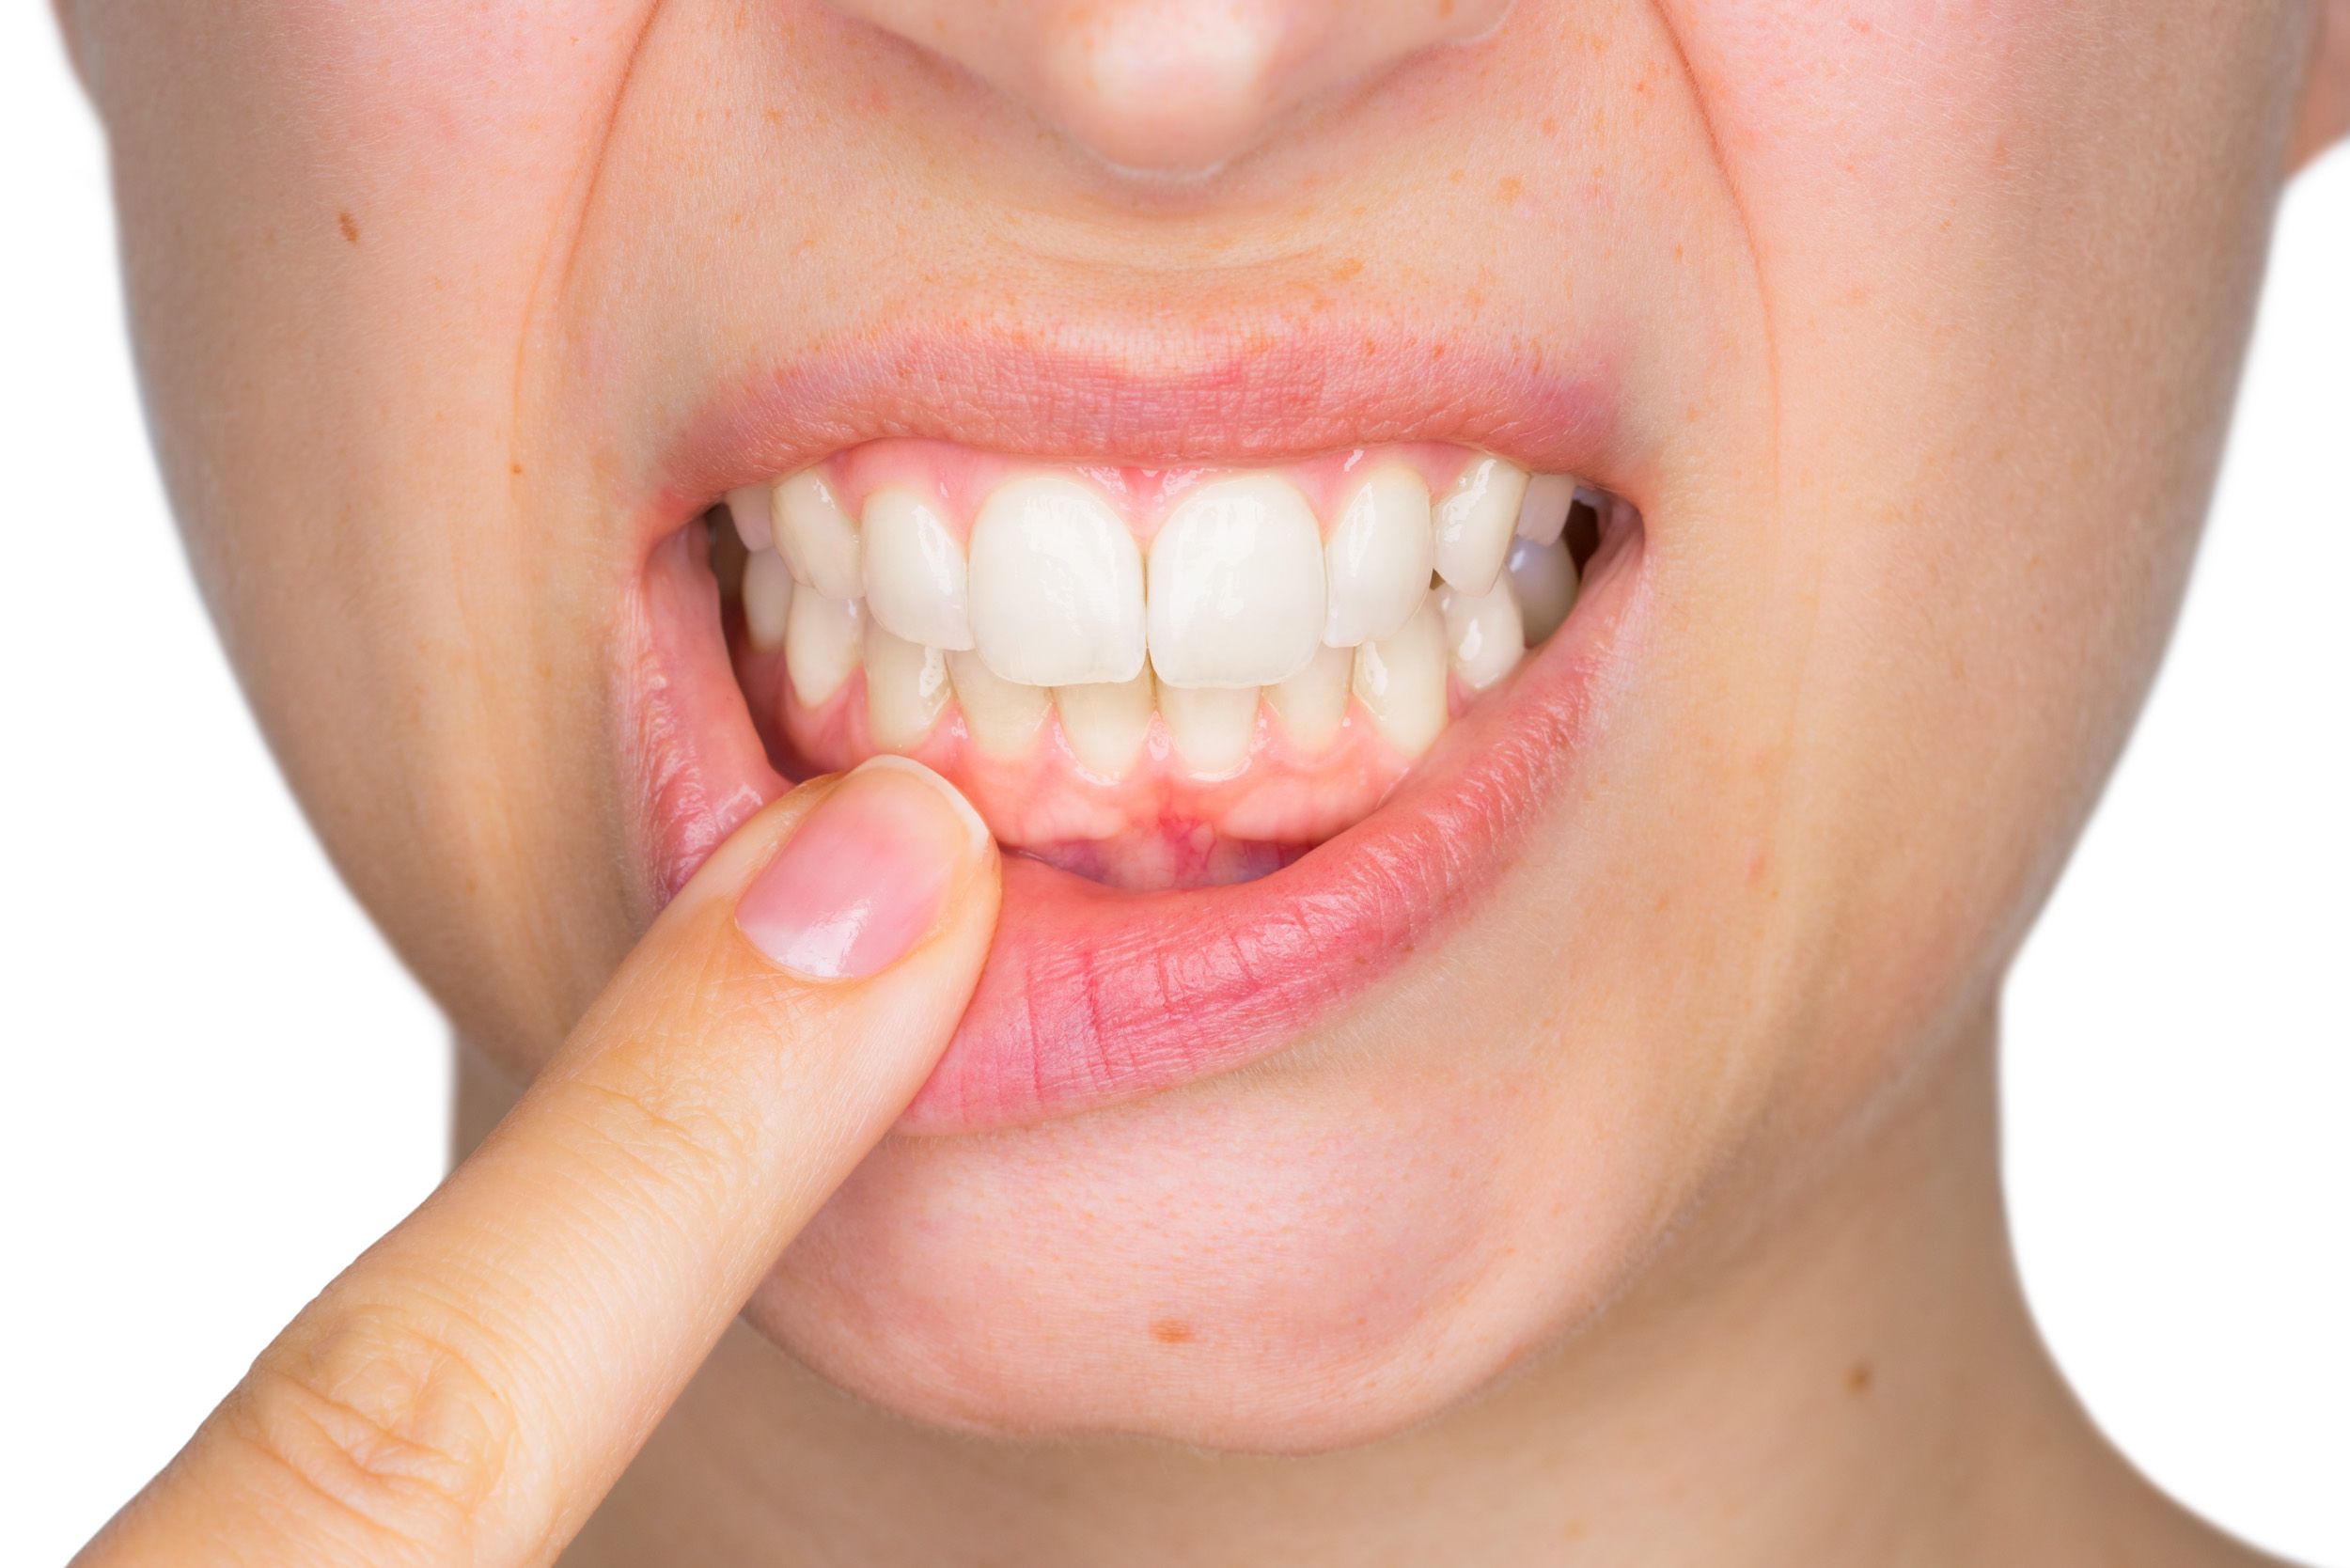 Болит зуб после лечения кариеса - может ли болеть?